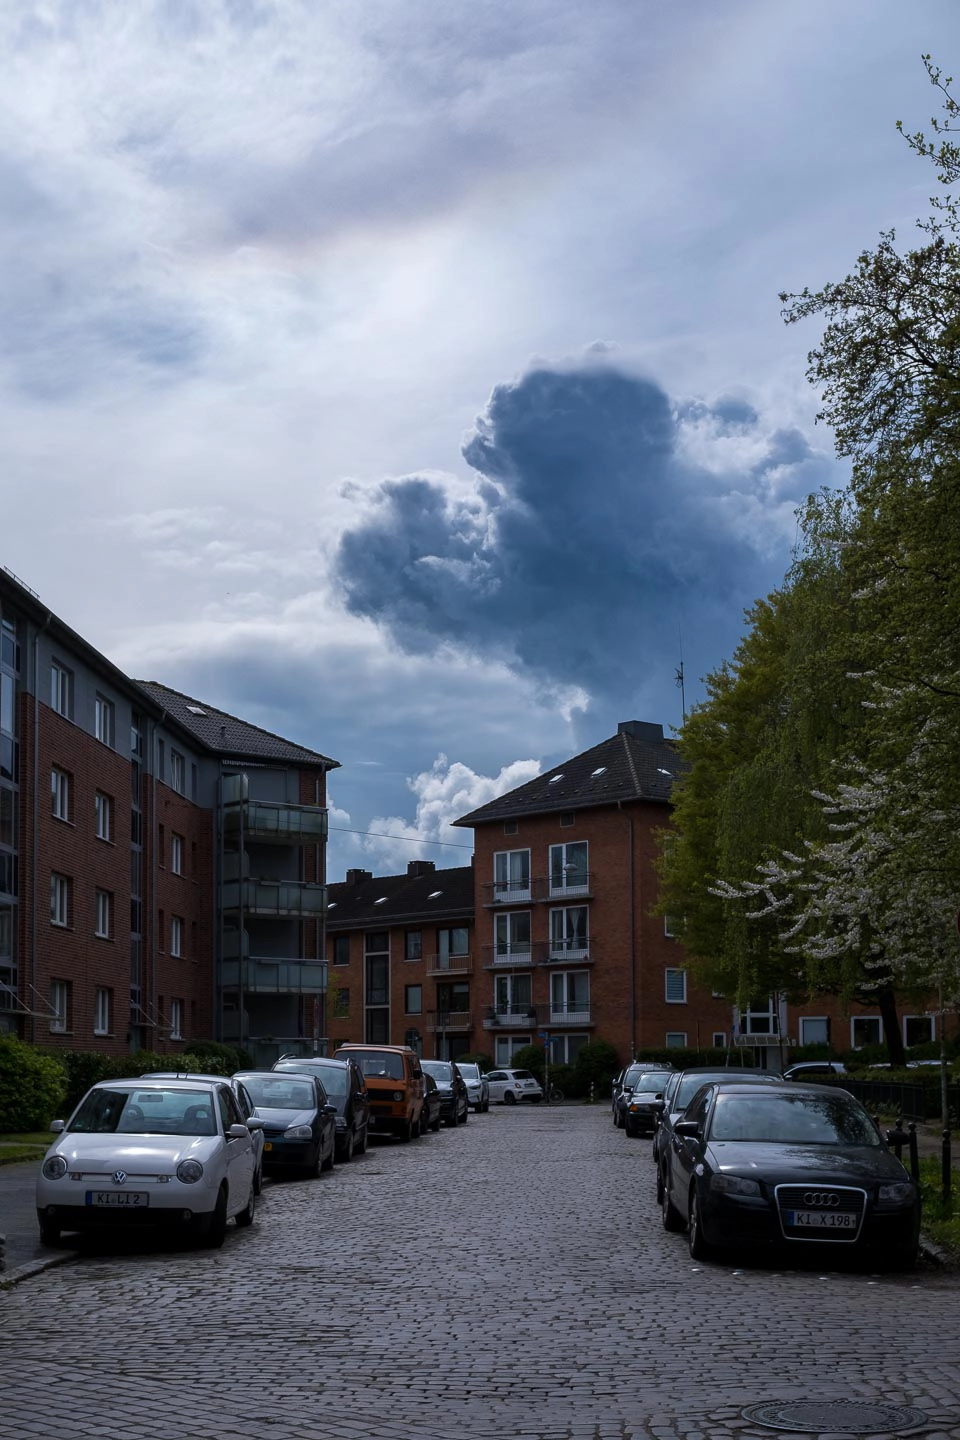 Streetfotografie von Gasse mit düsteren Wolken